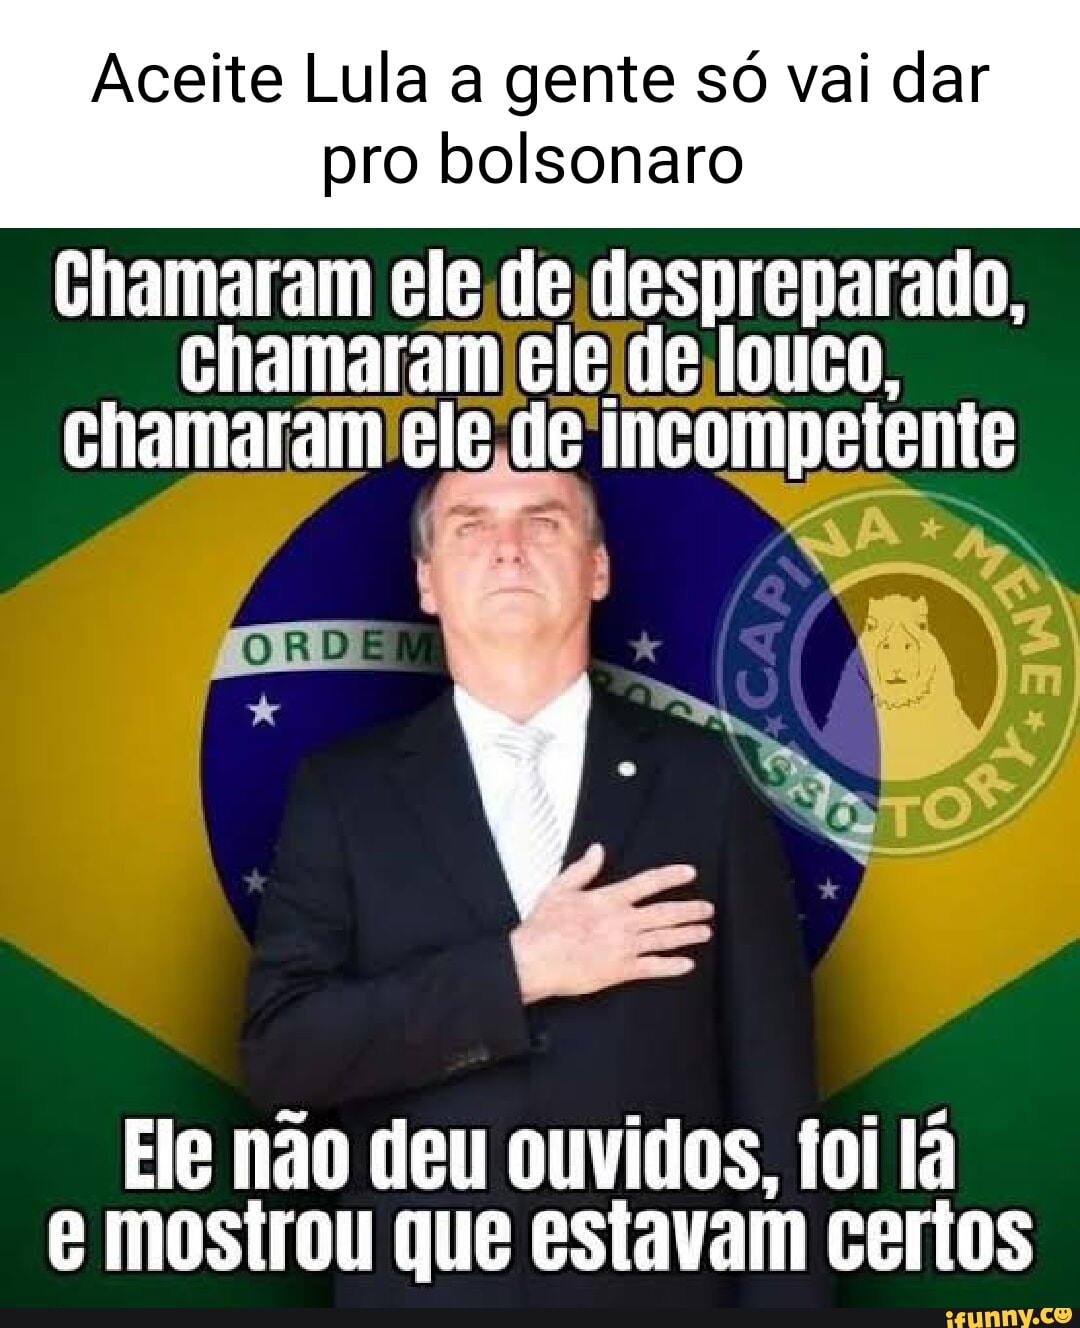 Memes de imagem RCzE17Ln9 por HUEstationdealer: 1 comentário - iFunny Brazil